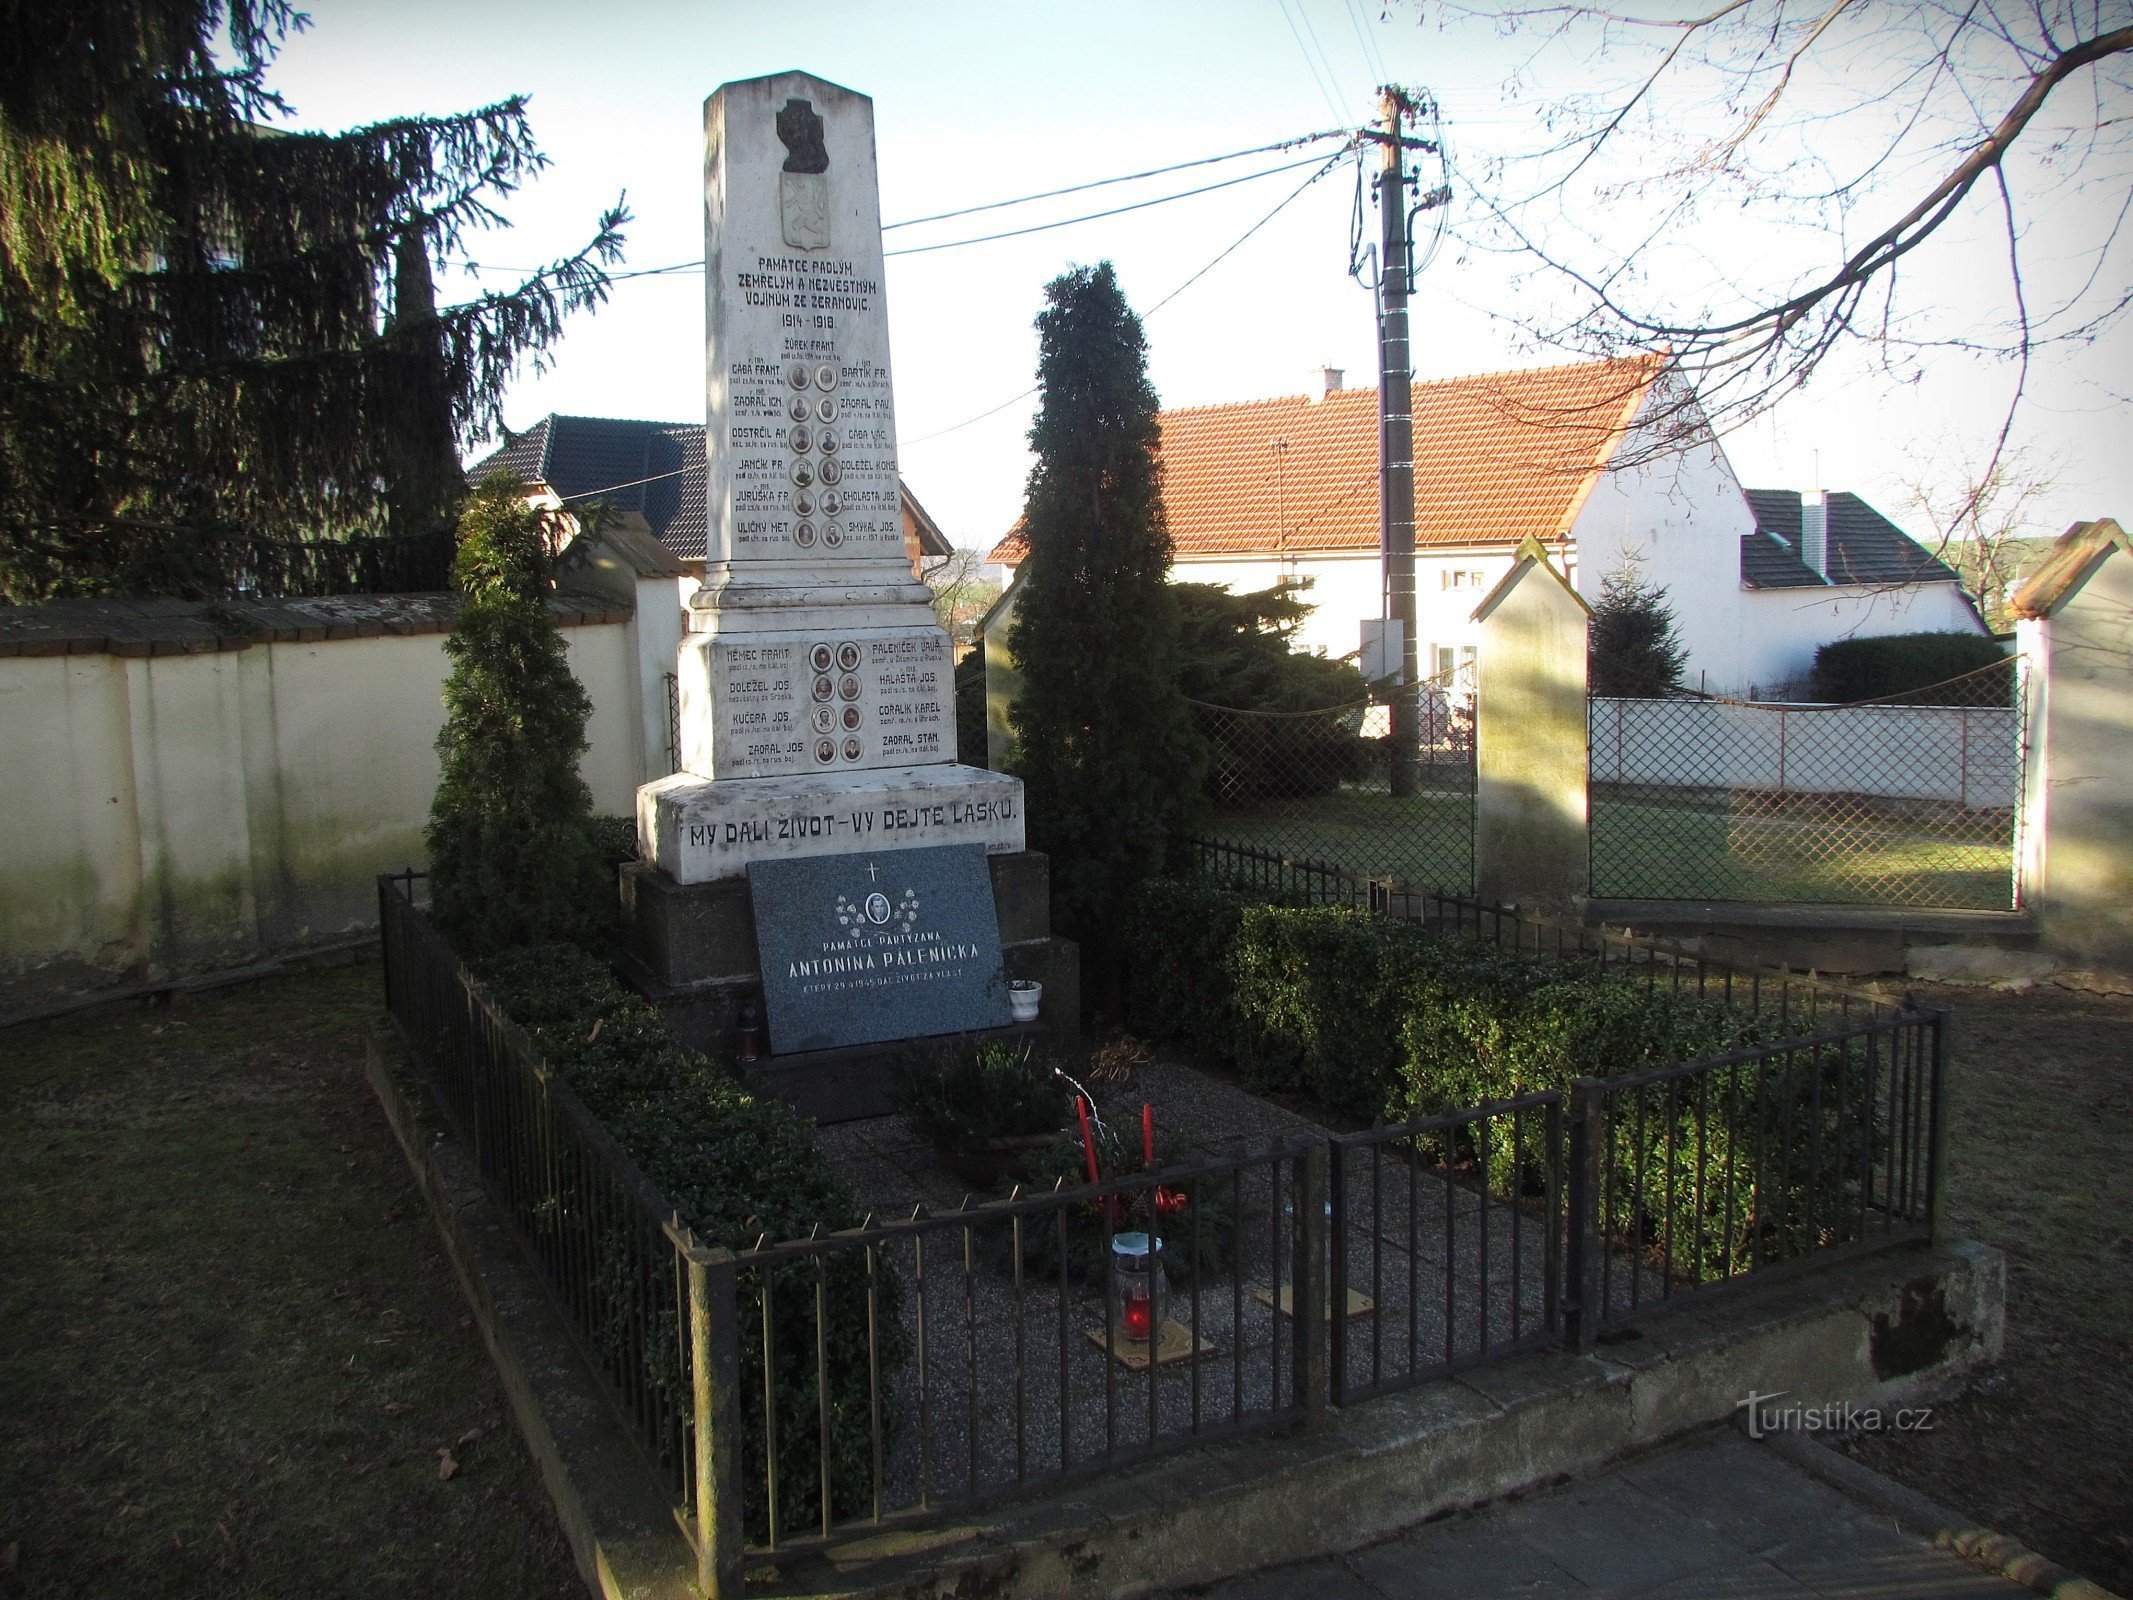 Žeranovice - Kaatuneiden muistomerkki